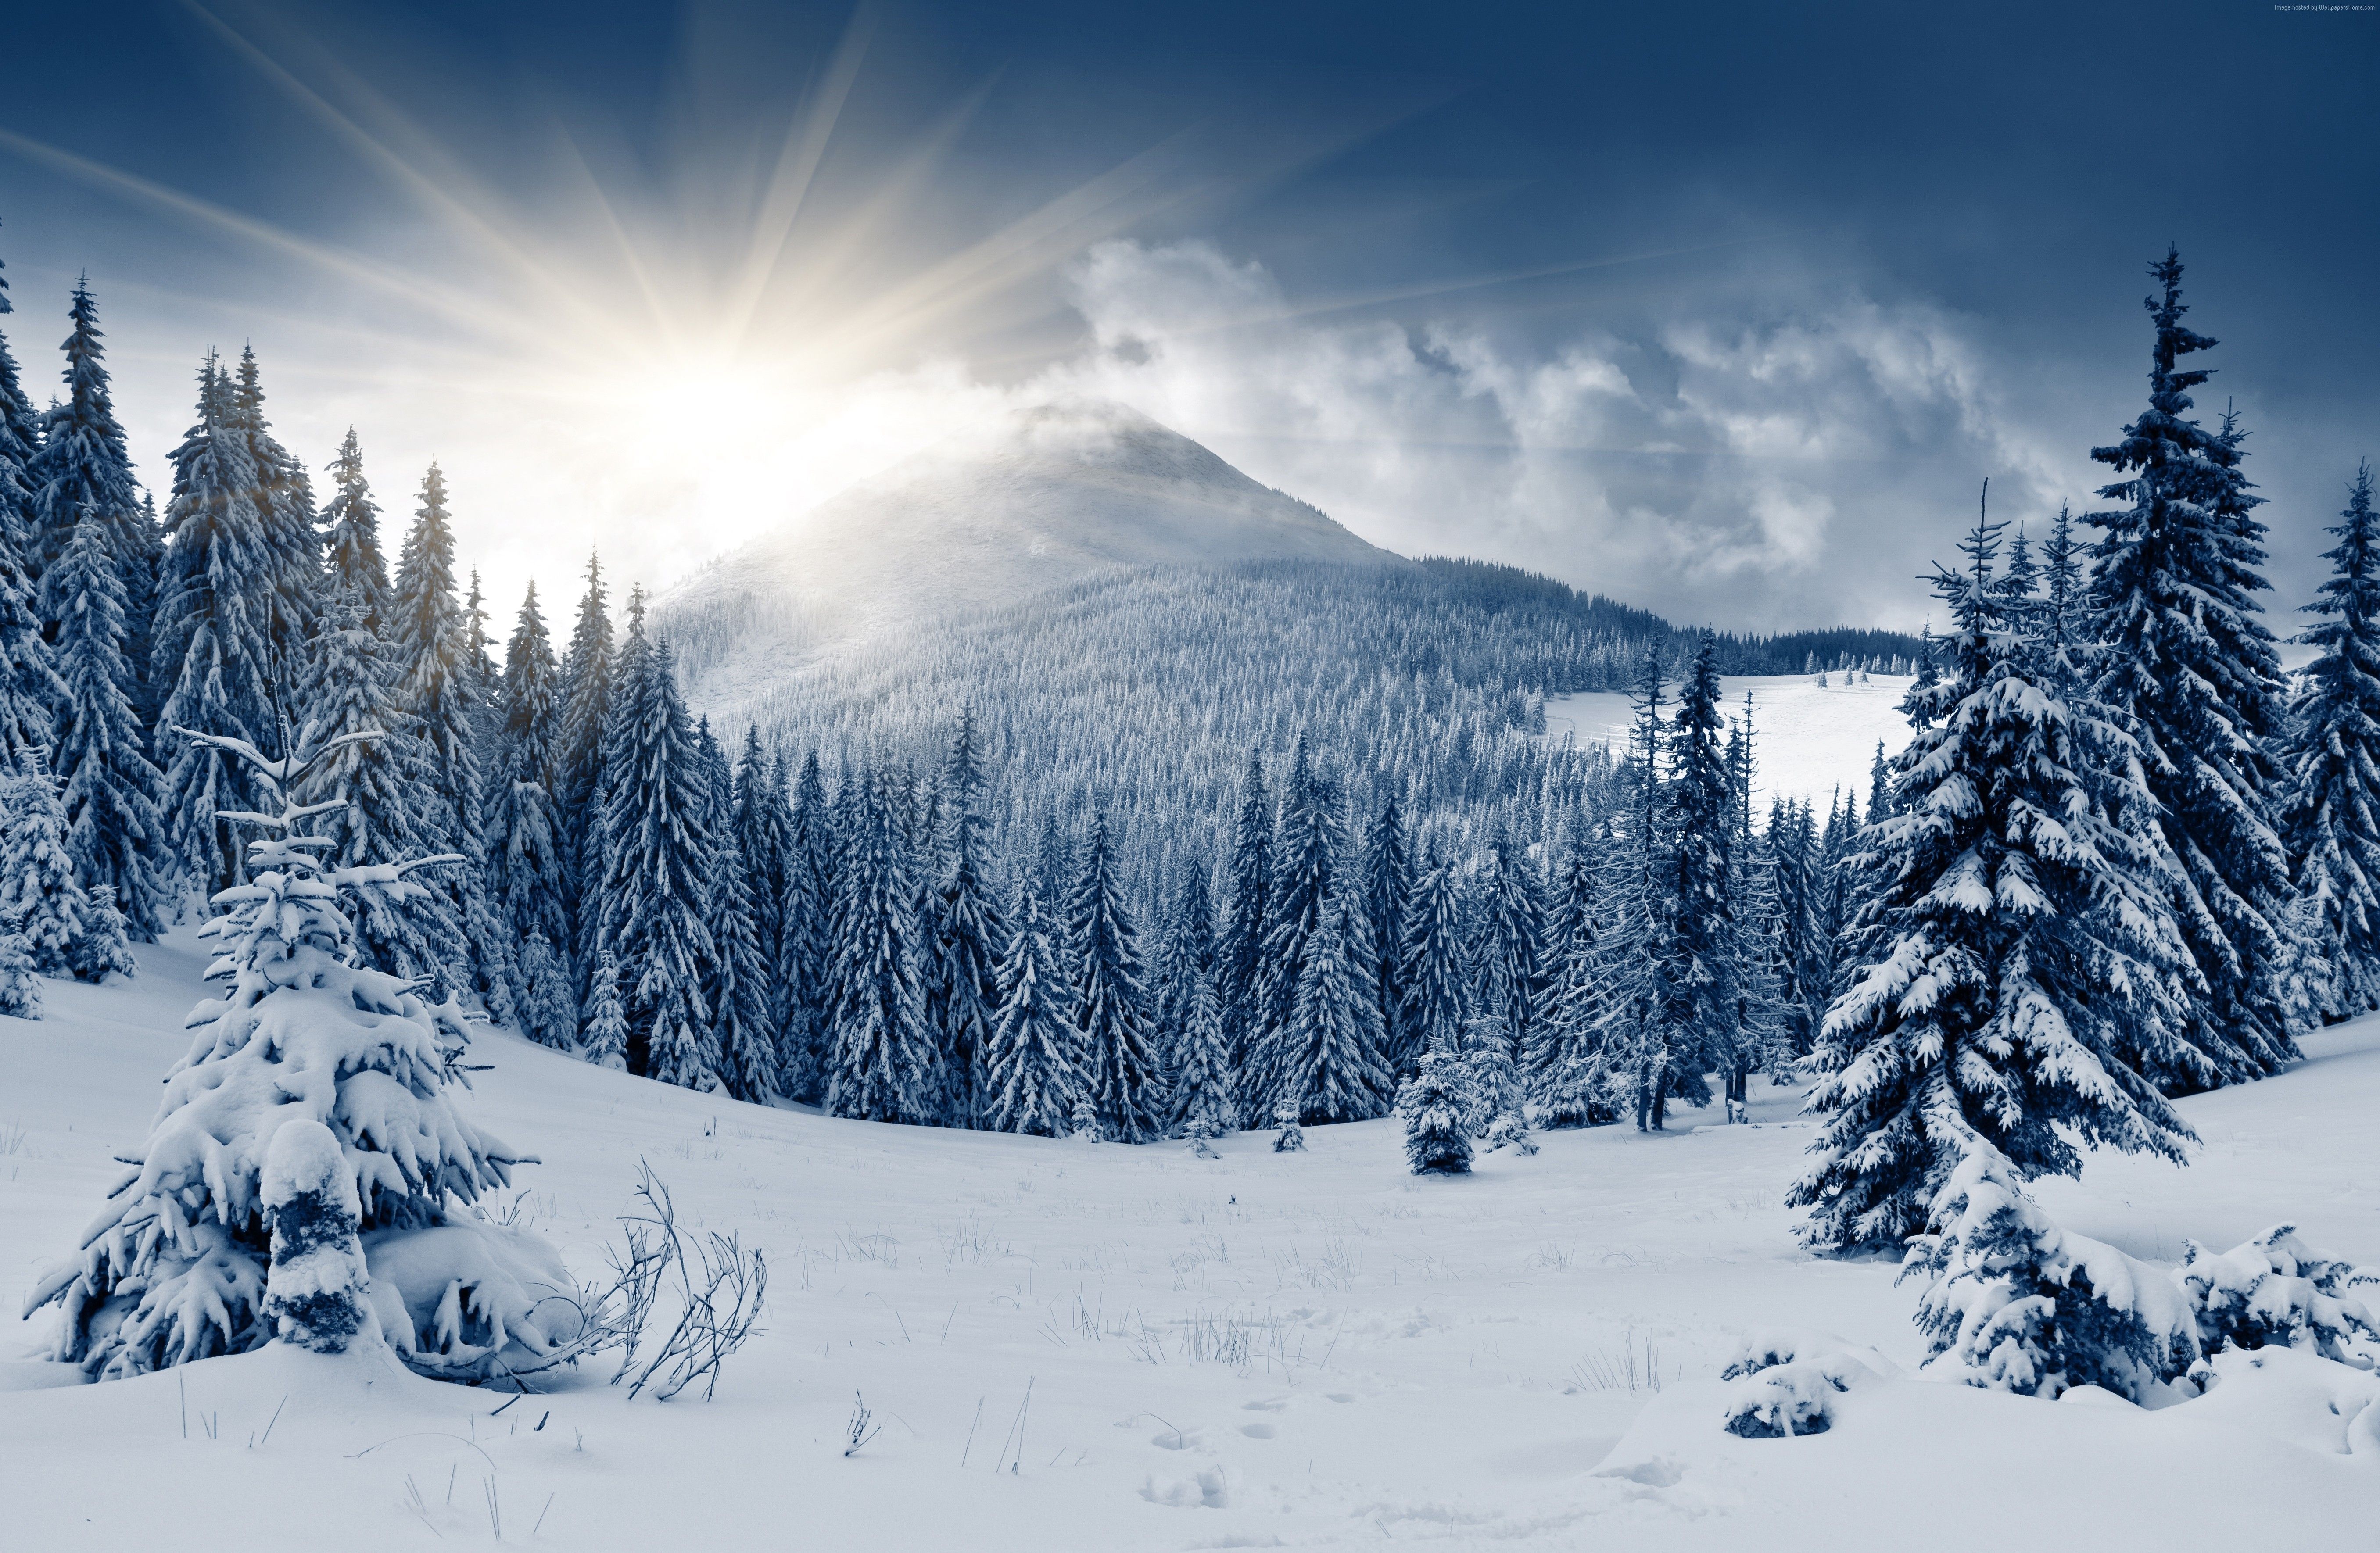 Winter Forest Wallpaper, Nature / Forest: Winter Forest, Mountain, Sun, Snow, Fir Trees. Winter Landscape, Winter Forest, Landscape Wallpaper